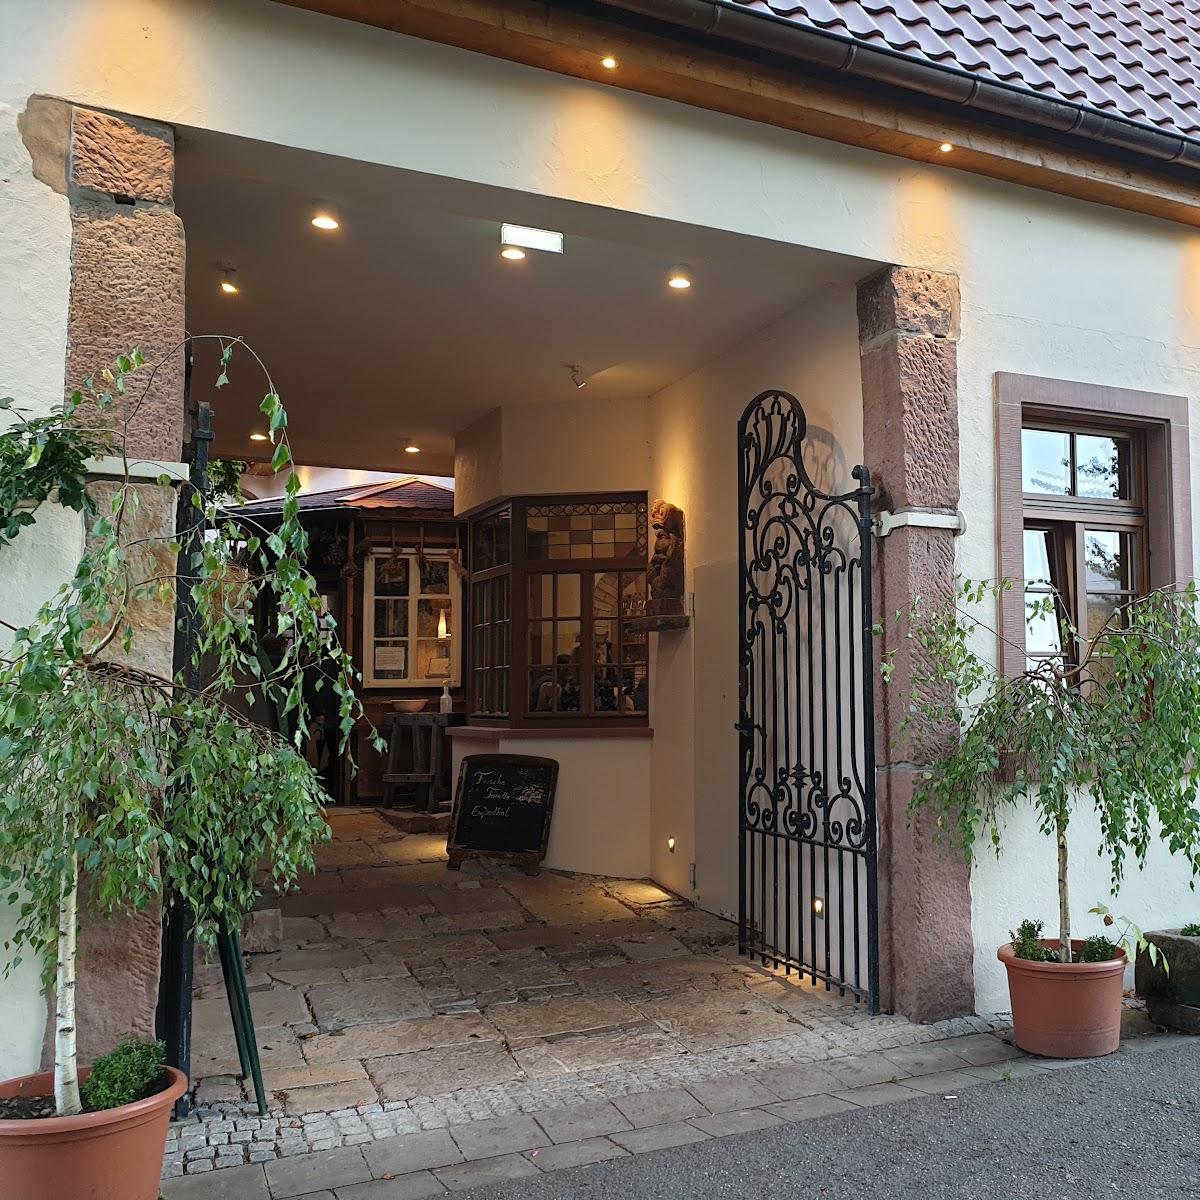 Restaurant "Gasthaus zum Logel" in Hainfeld